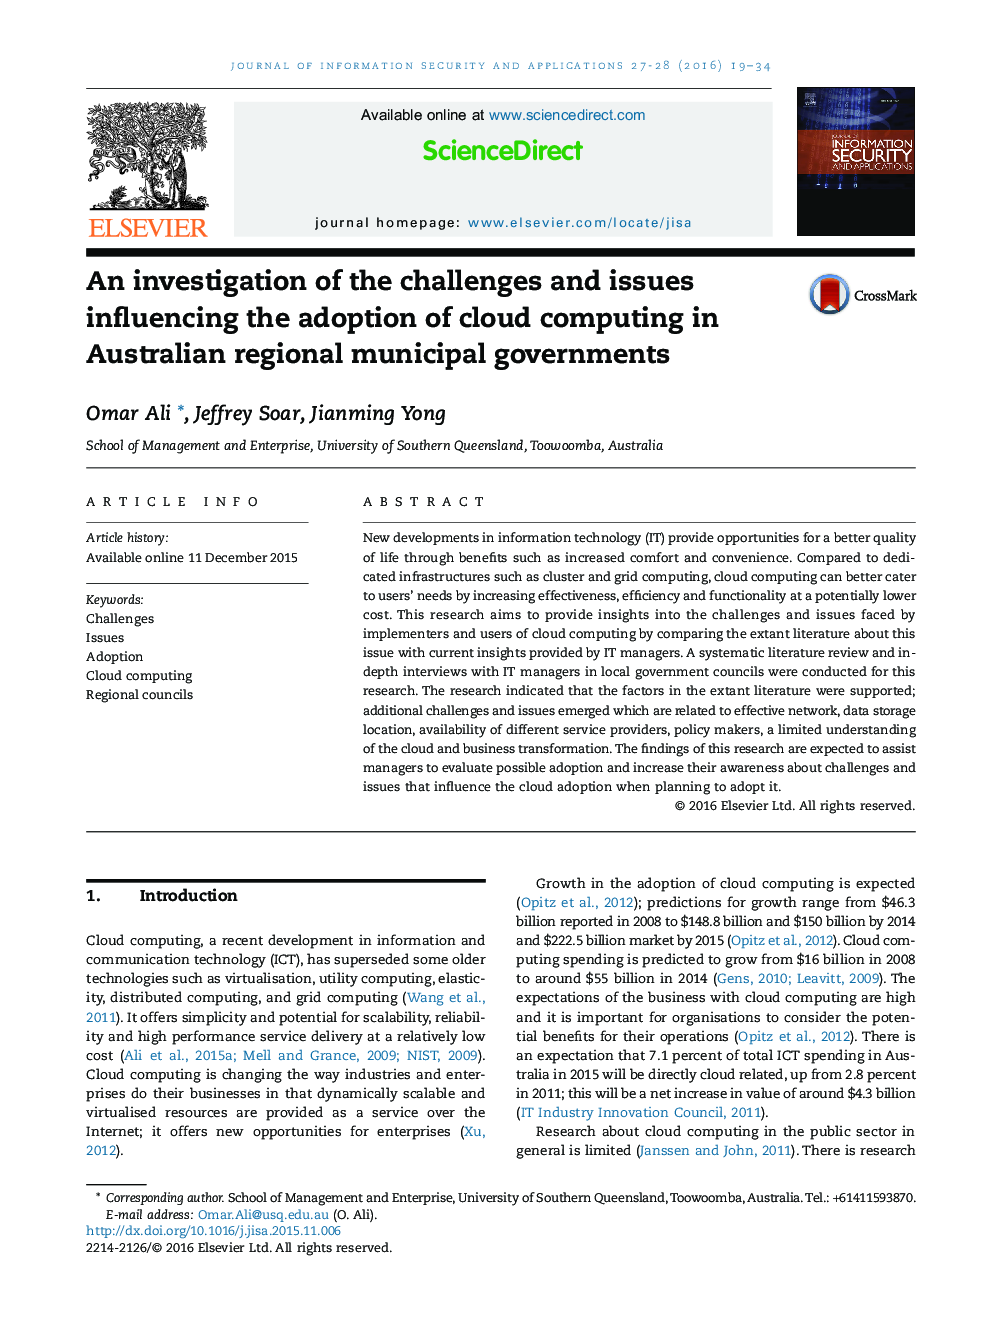 بررسی چالش ها و مسائل مربوط به تصویب رایانه های ابر در دولت های شهری منطقه ای استرالیا